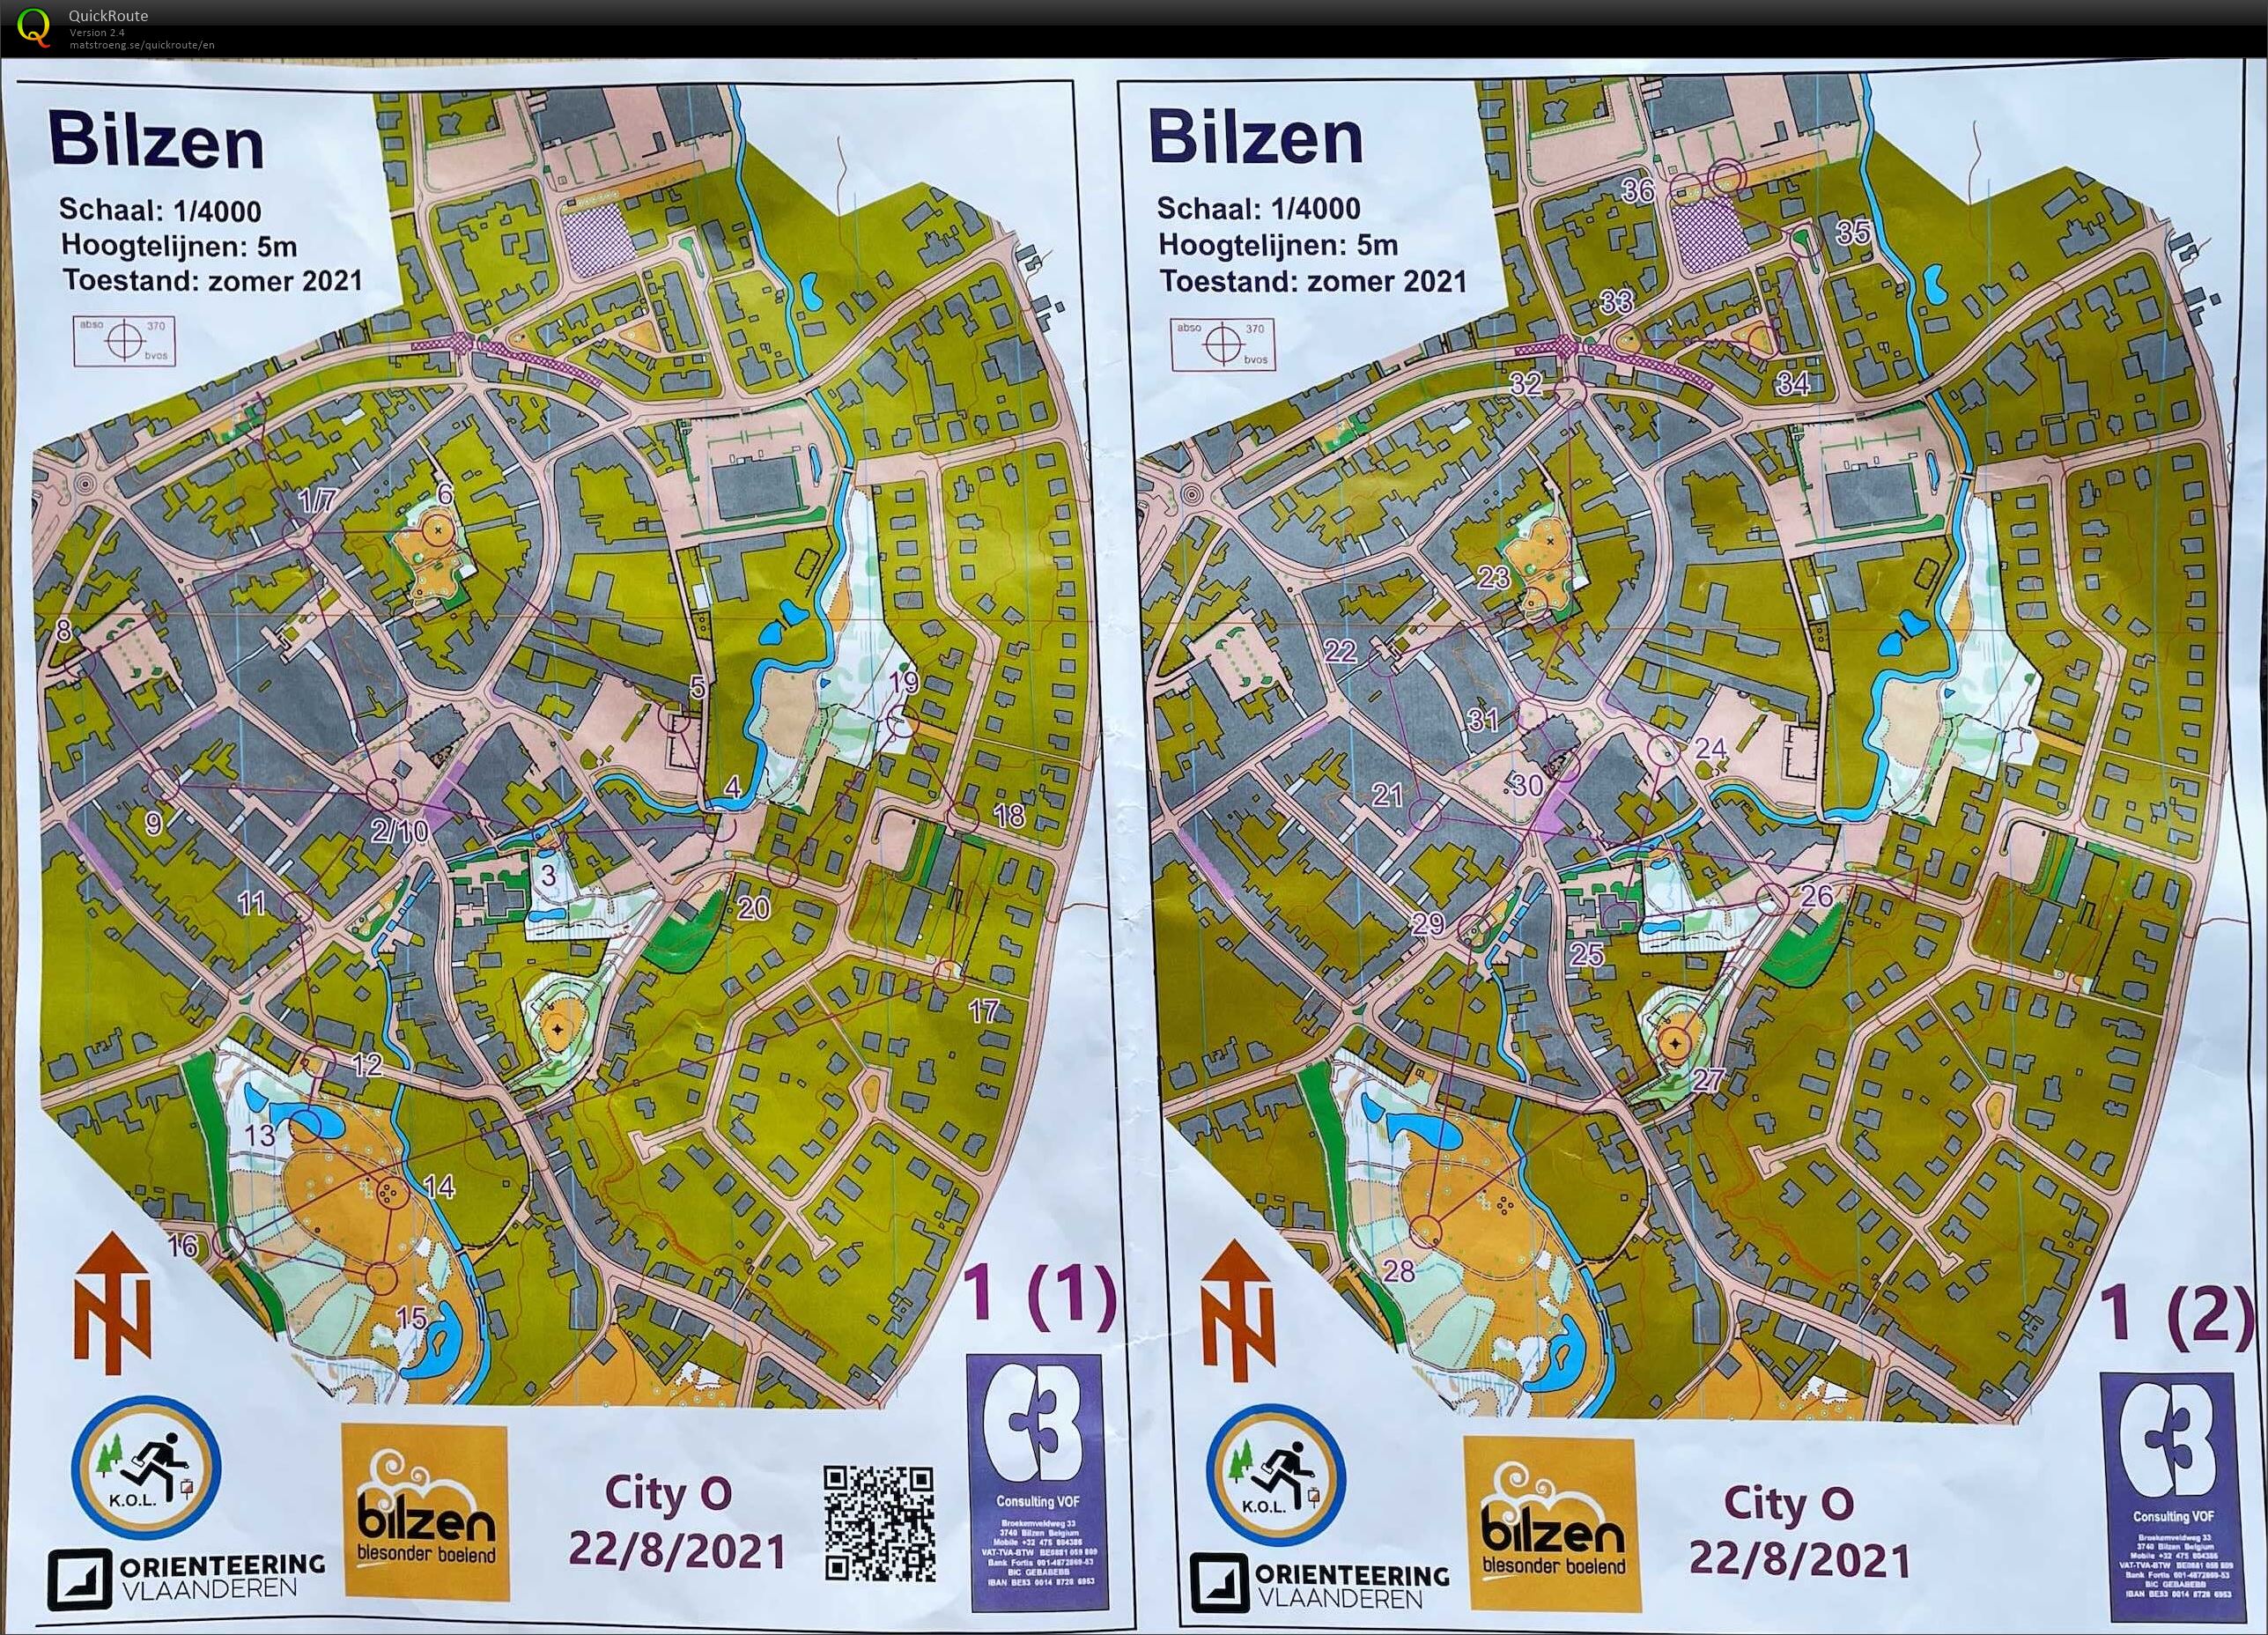 City-O Bilzen (22/08/2021)